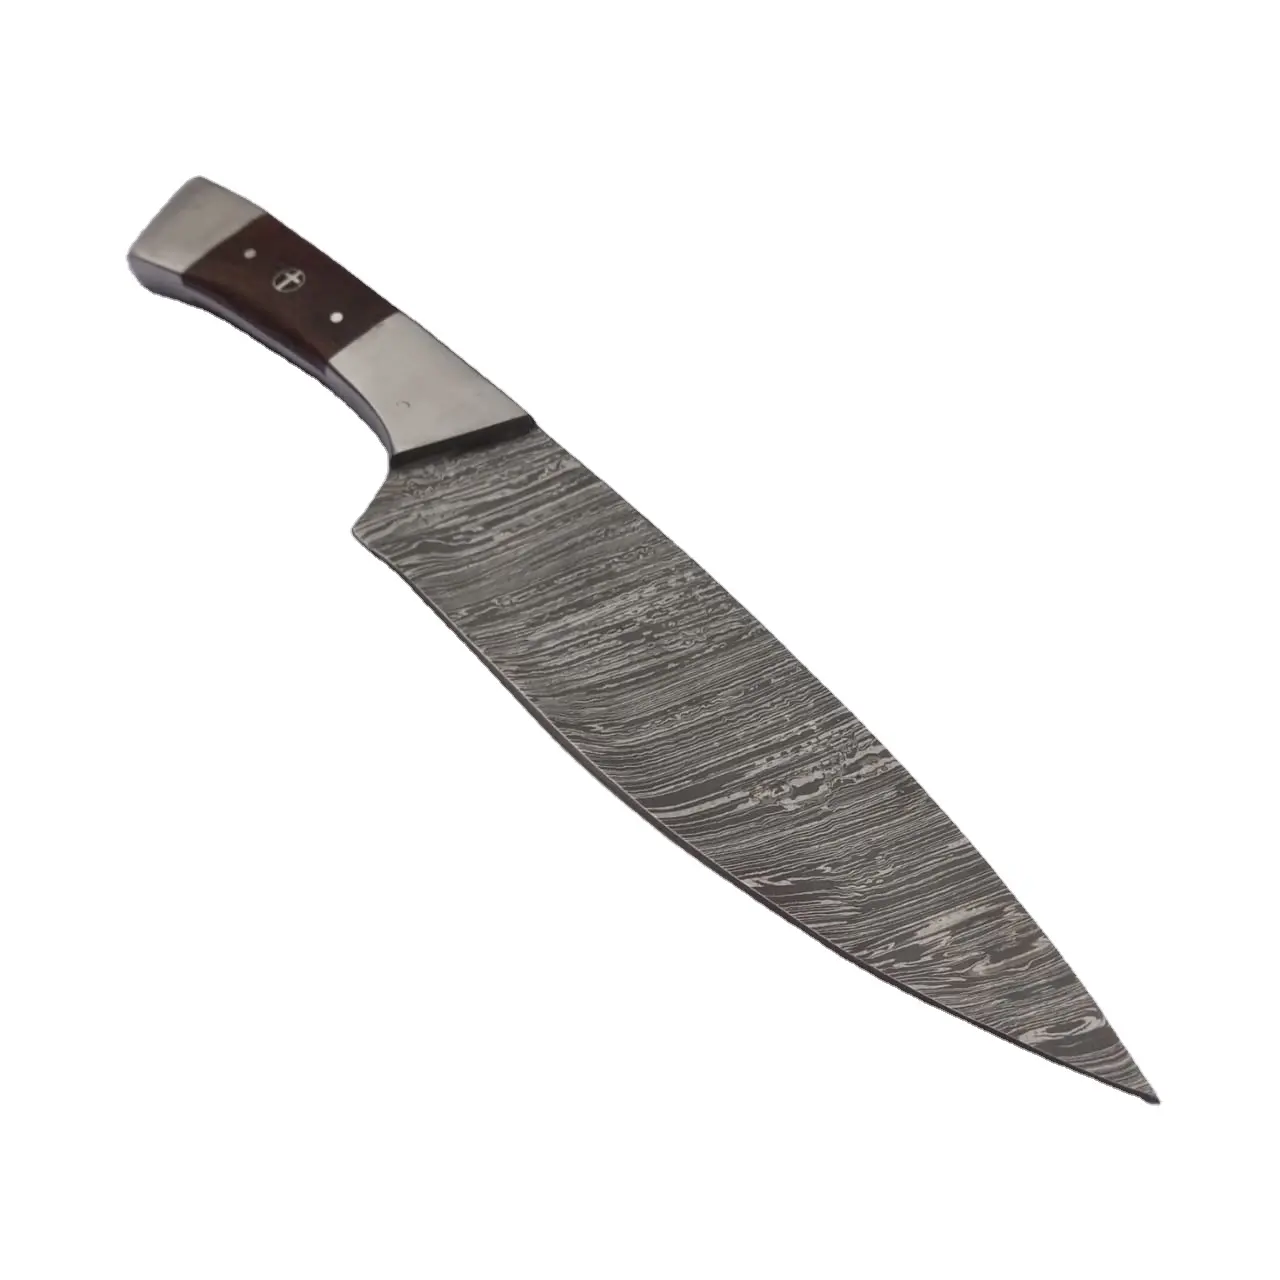 Premium kalite profesyonel el yapımı şam çelik 12.5 inç ahşap saplı şef bıçağı için evrensel mutfak